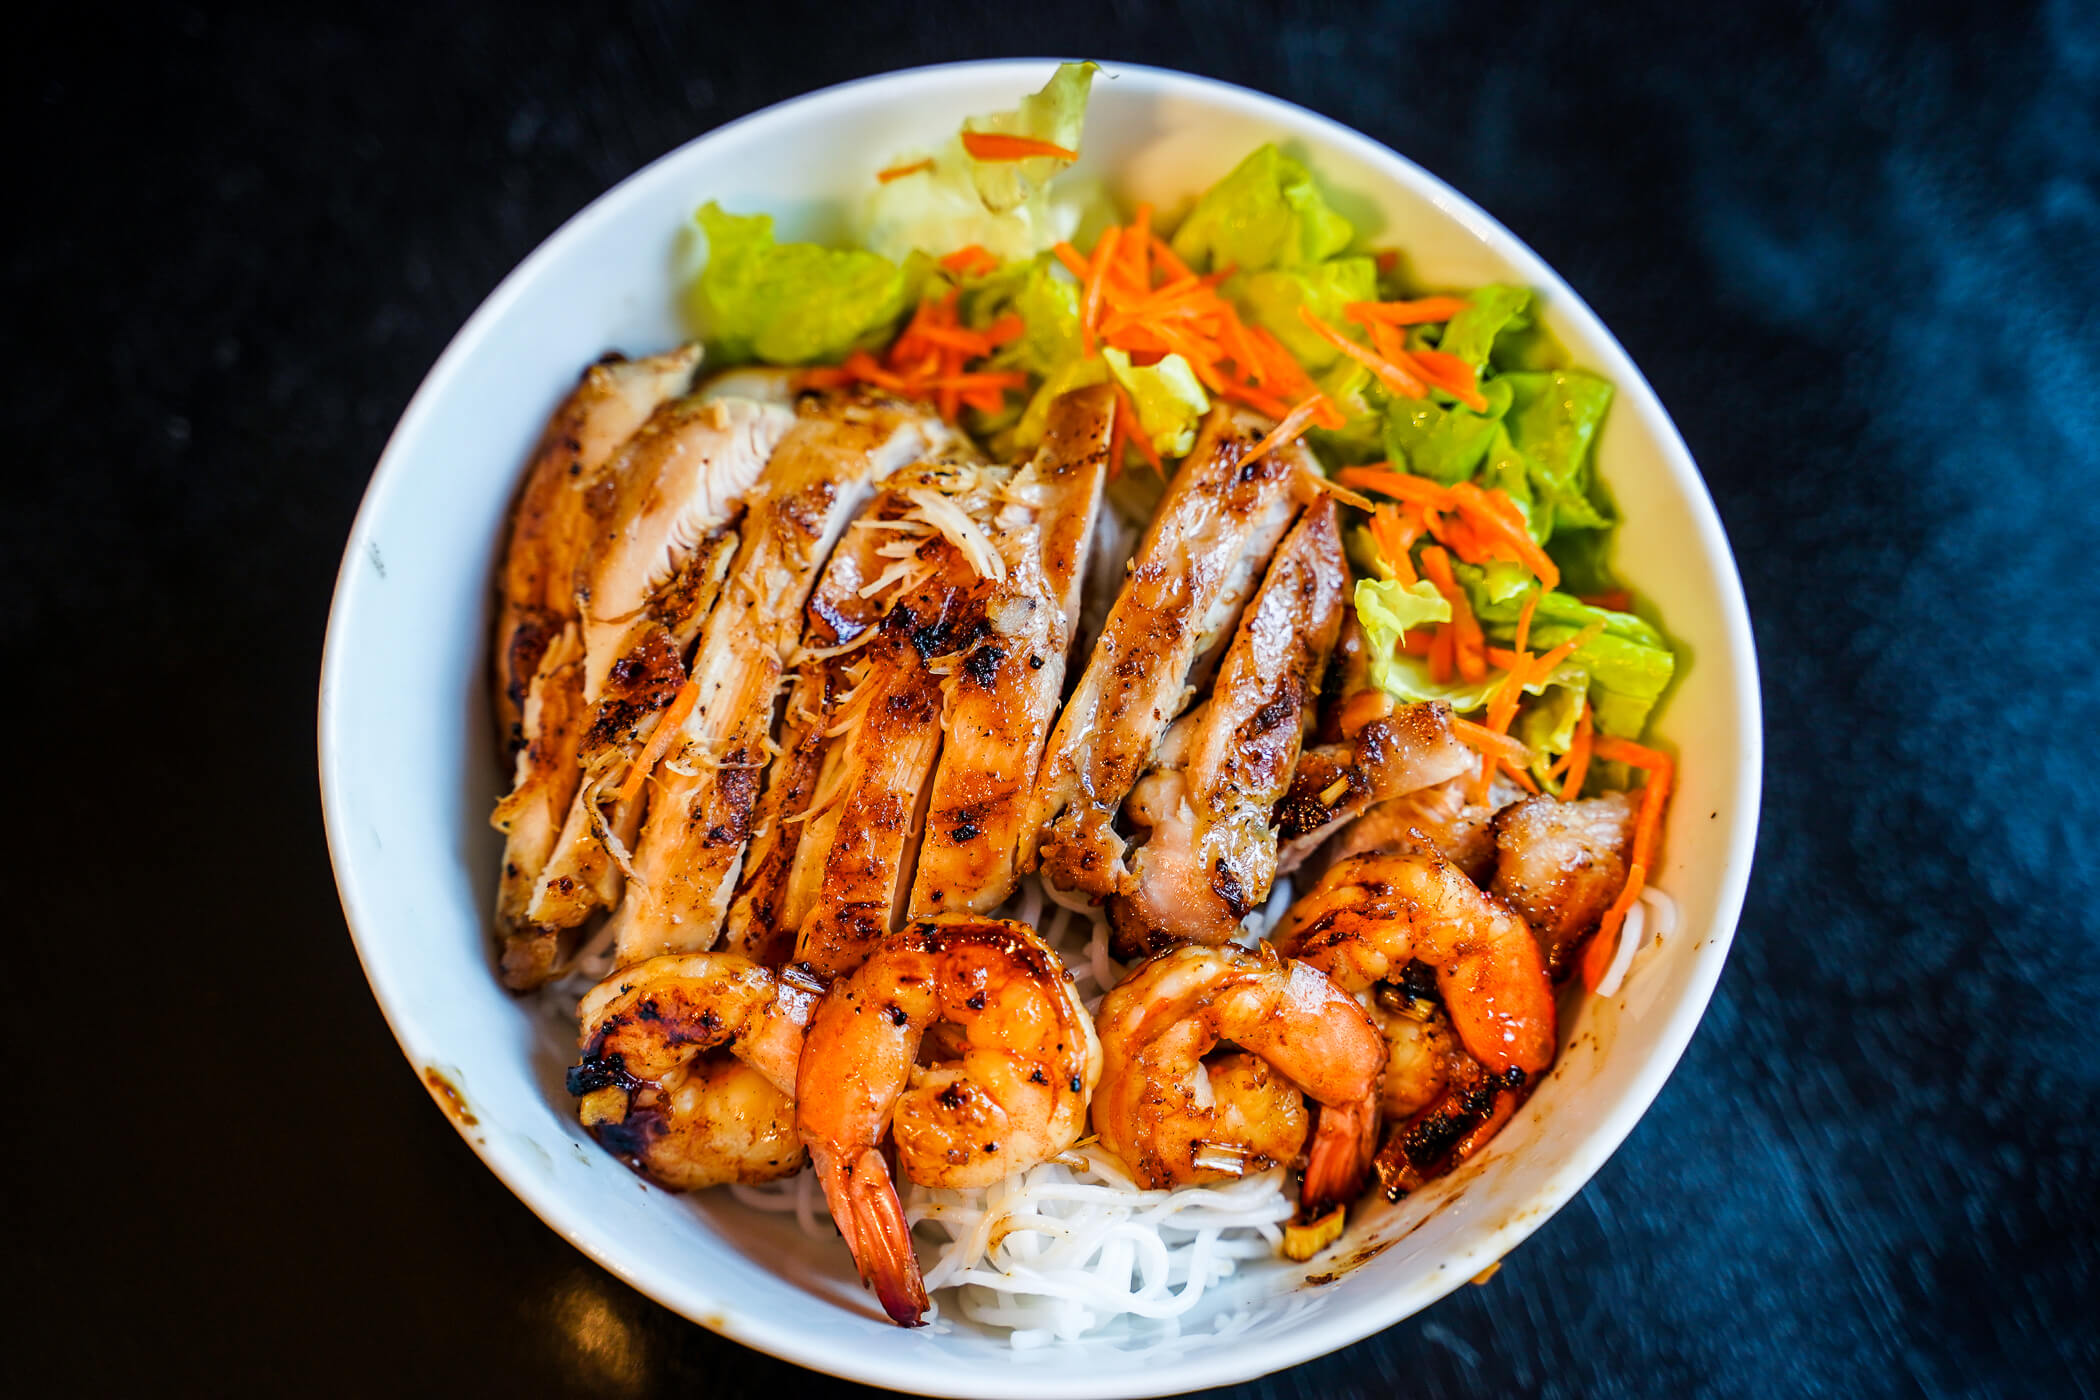 Eat Well, Explore Often - Lemongrass Chicken & Shrimp Vermicelli Bowl ...